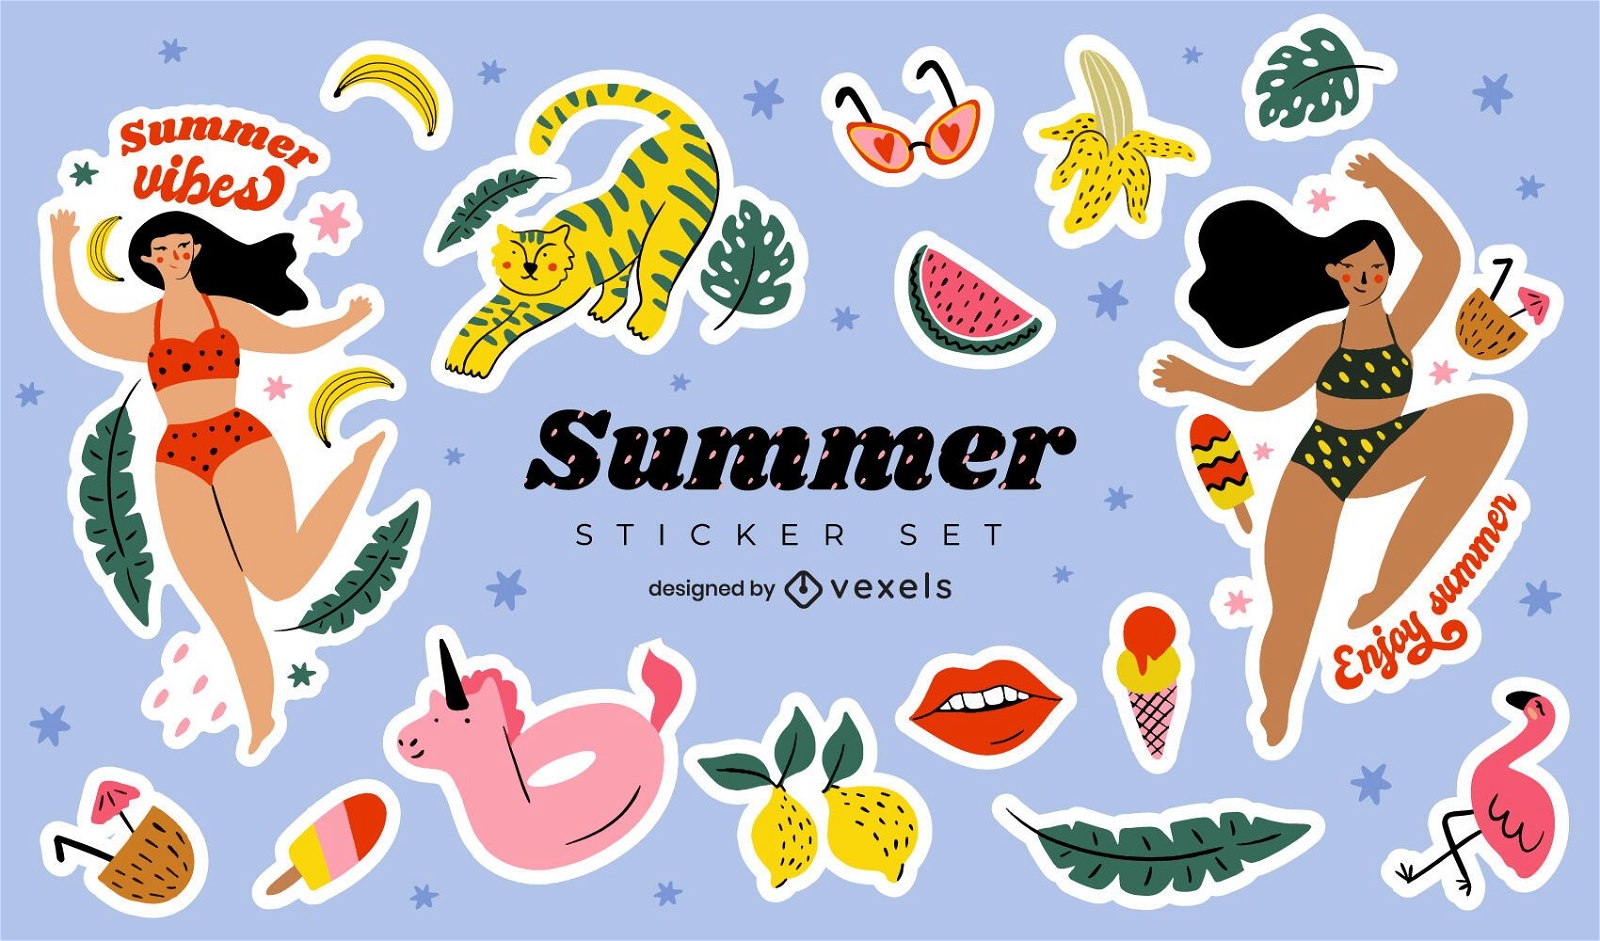 Summer sticker set